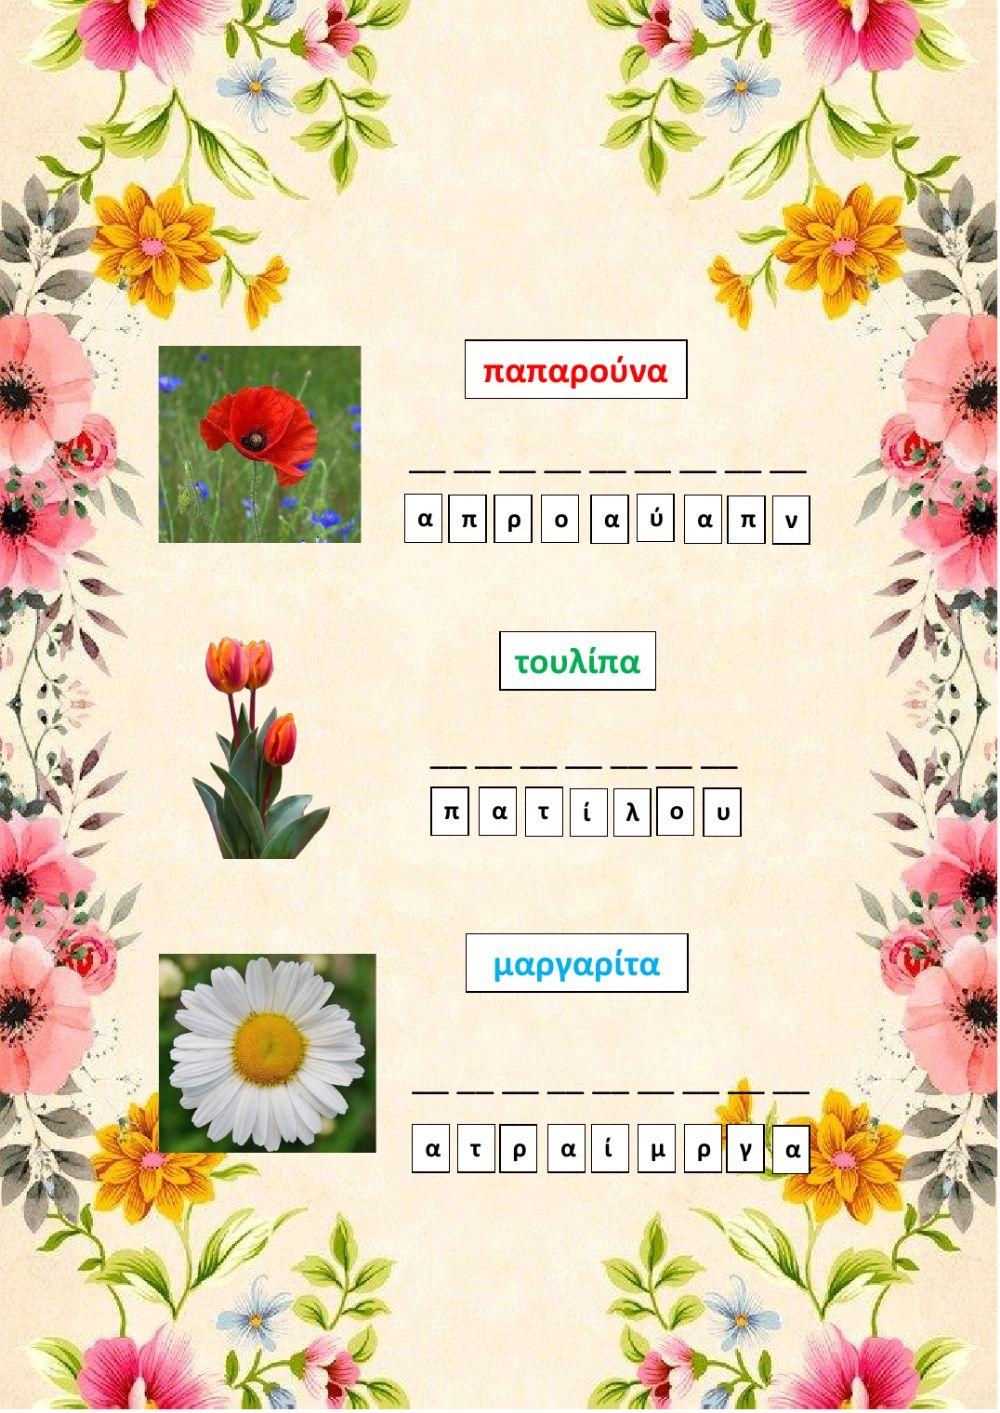 Ονόματα λουλουδιών